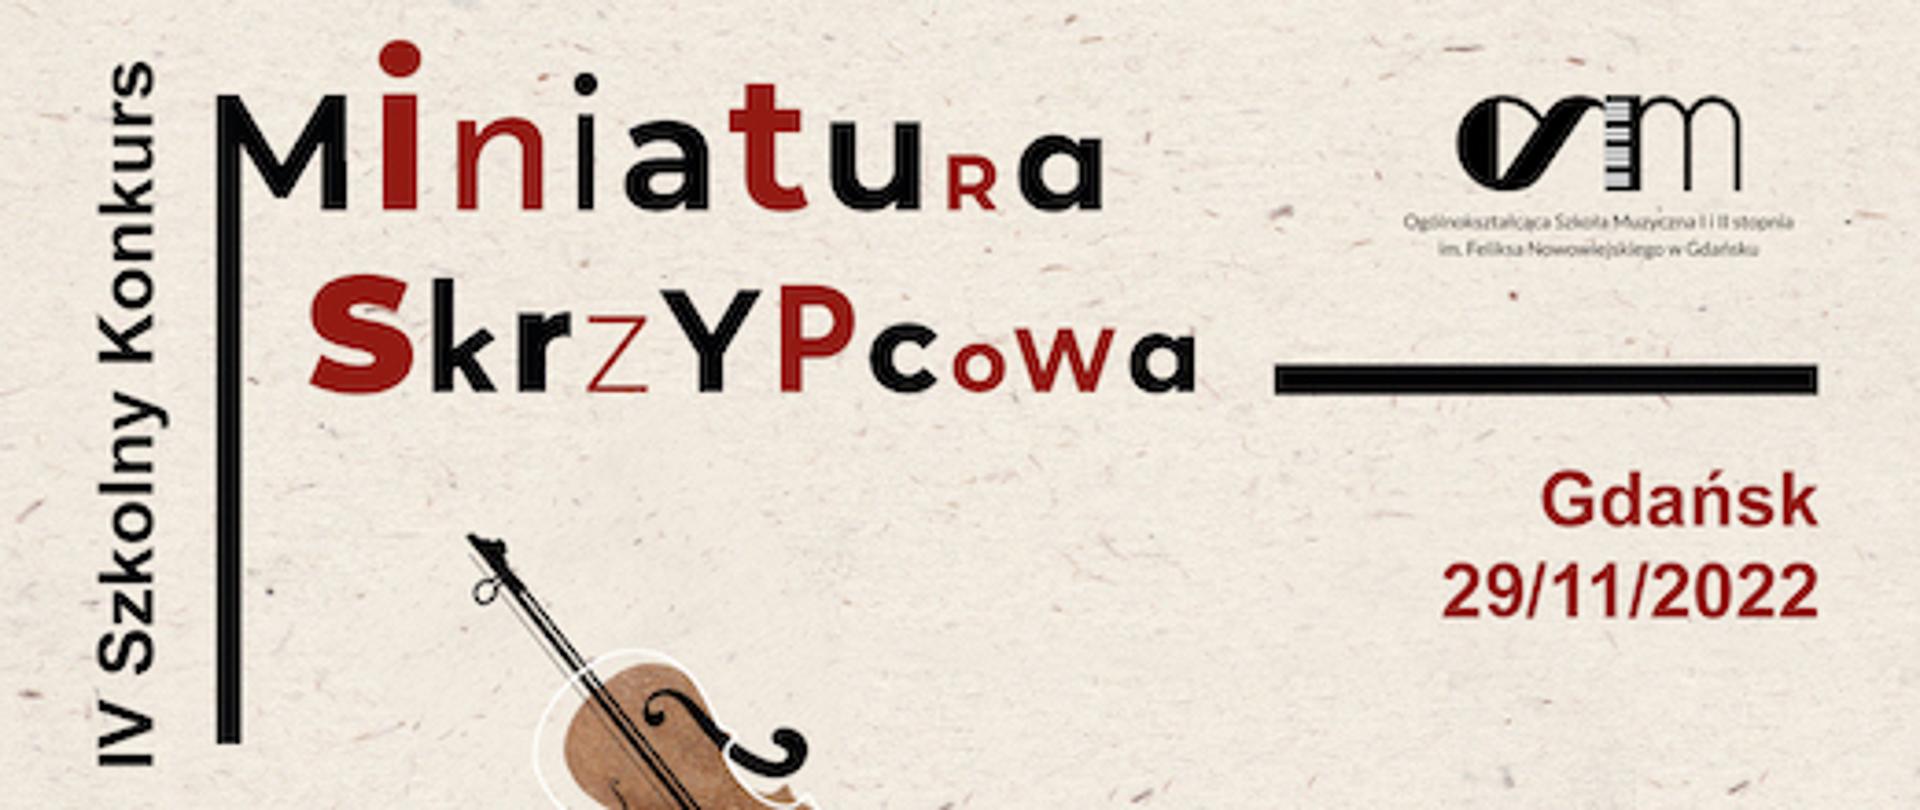 Obraz na jasnym tle zawiera logo konkursu oraz szkoły. IV Szkolny Konkurs Skrzypcowy wraz z datą wydarzenia Gdańsk 29 listopada 2022 roku.